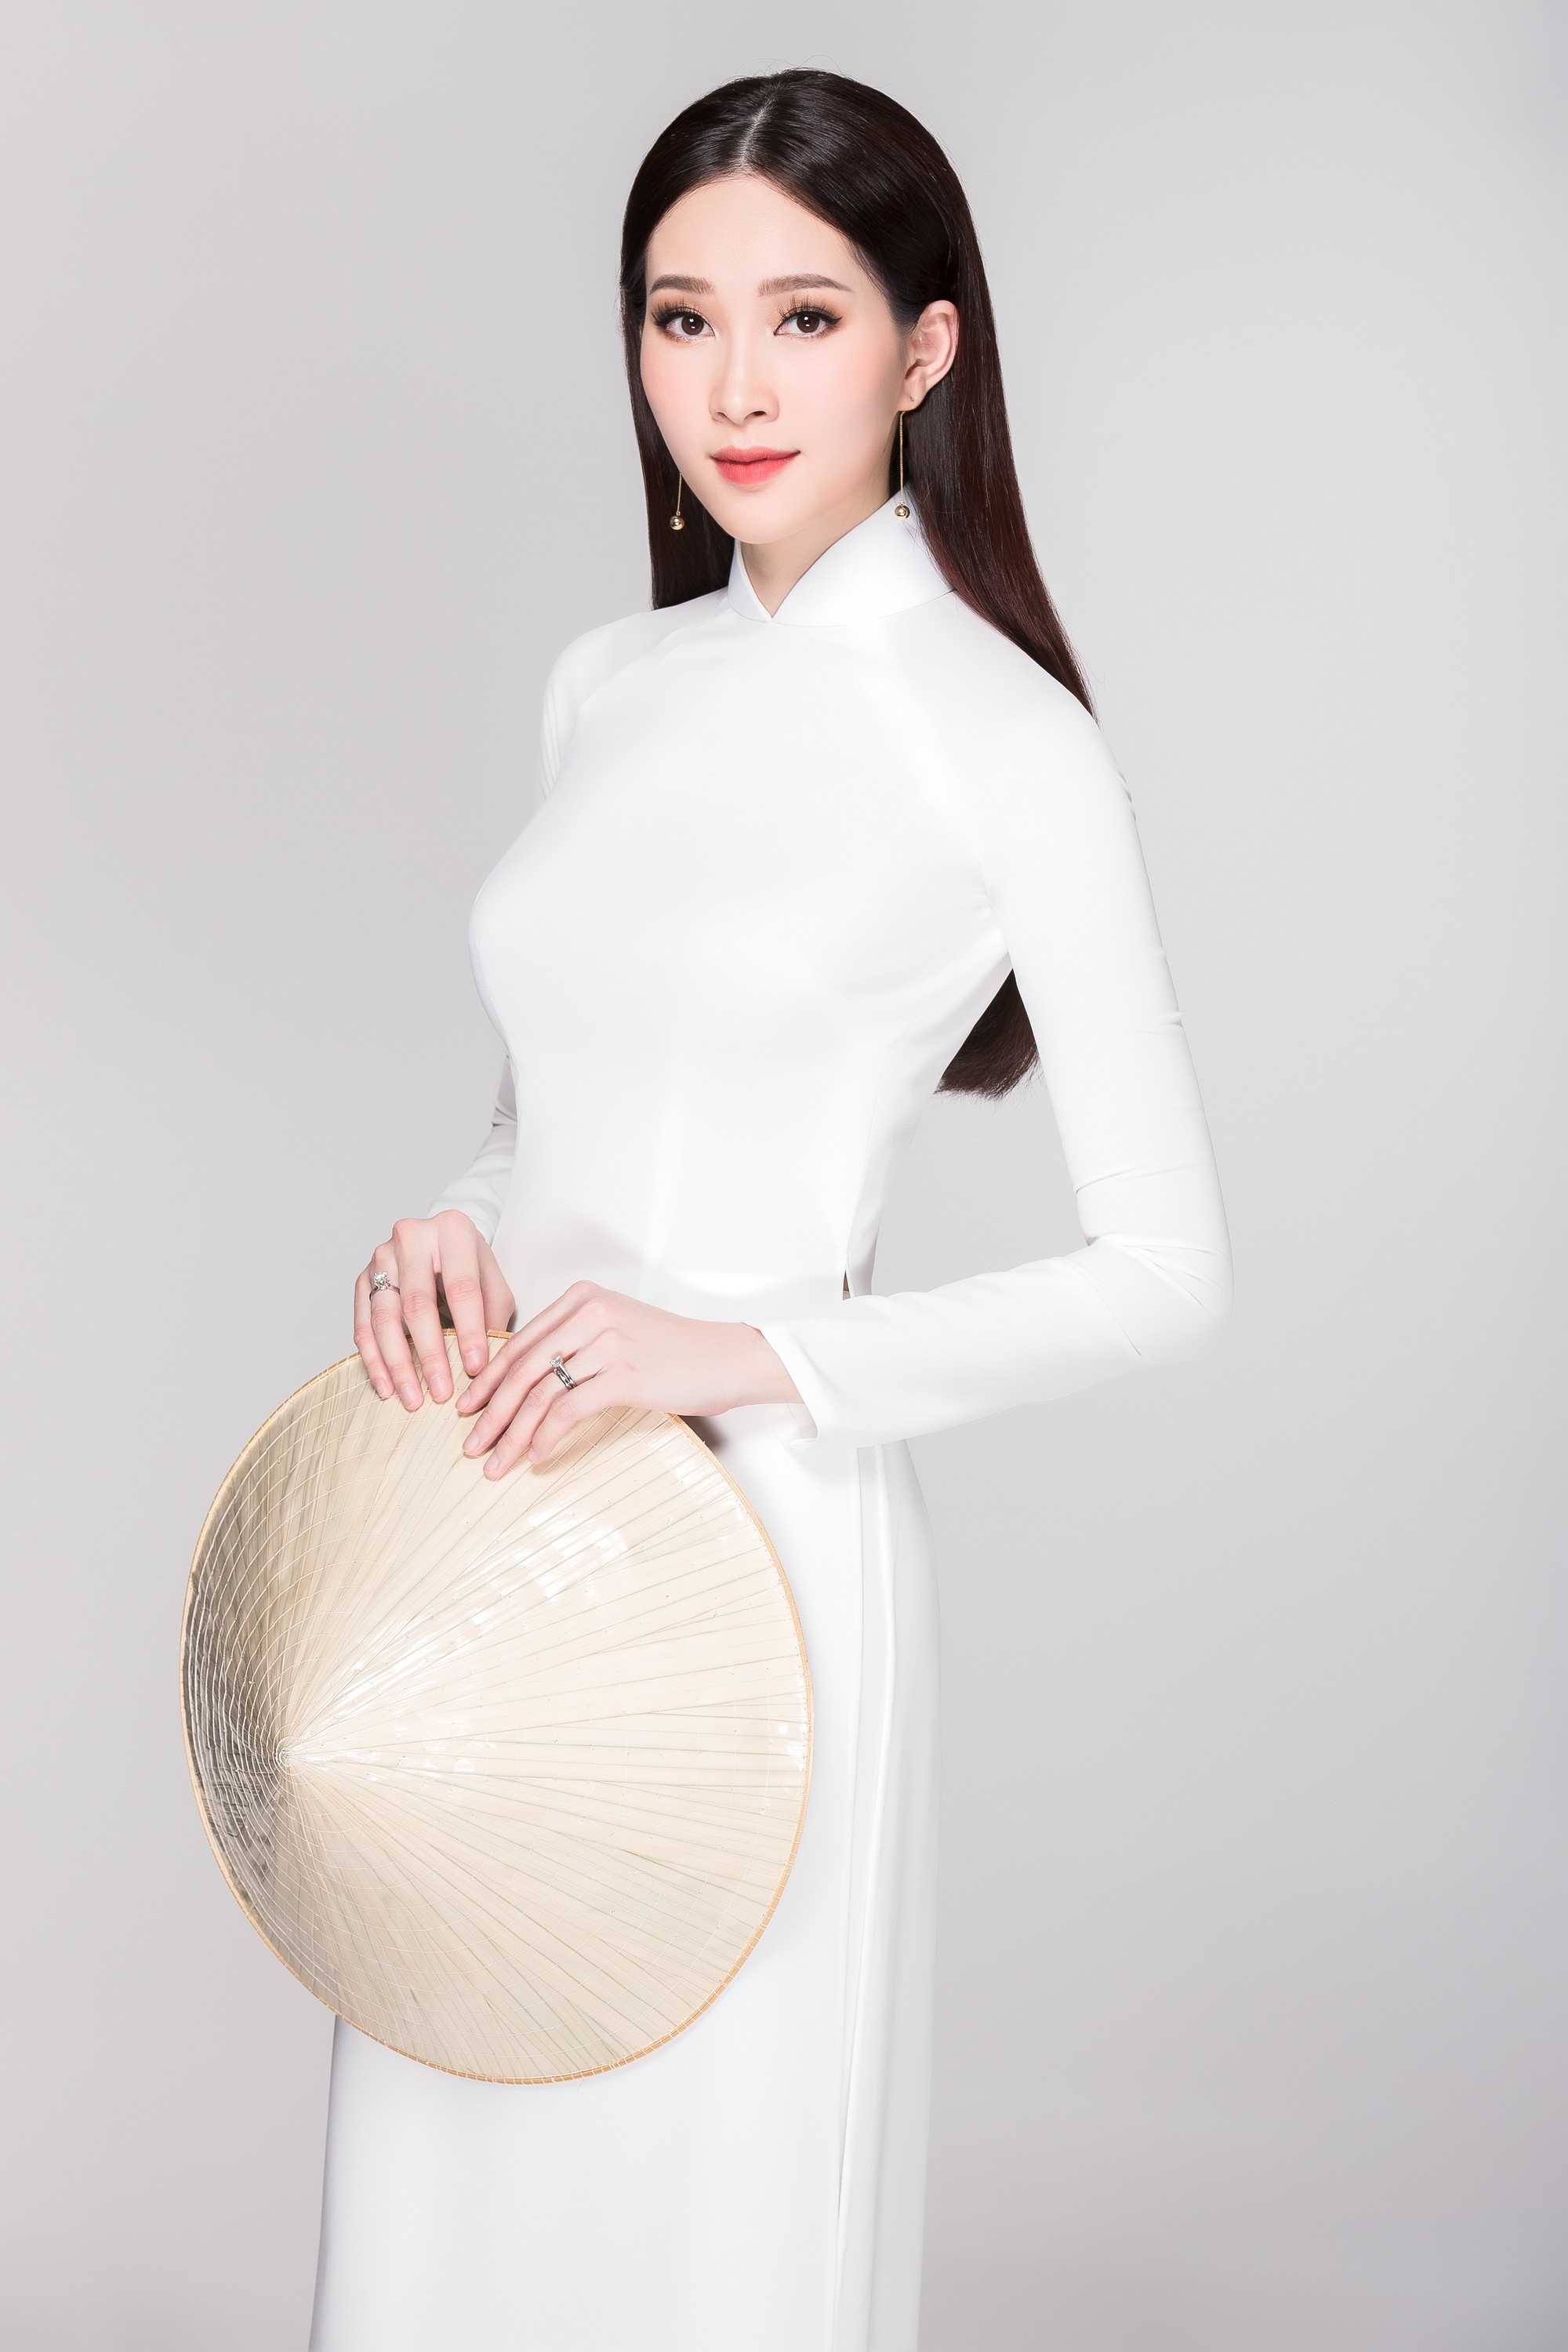 Không váy áo gợi cảm, Hoa hậu Kỳ Duyên, Đặng Thu Thảo lại gợi nhớ cả bầu trời thanh xuân khi diện áo dài trắng nữ sinh - Ảnh 2.